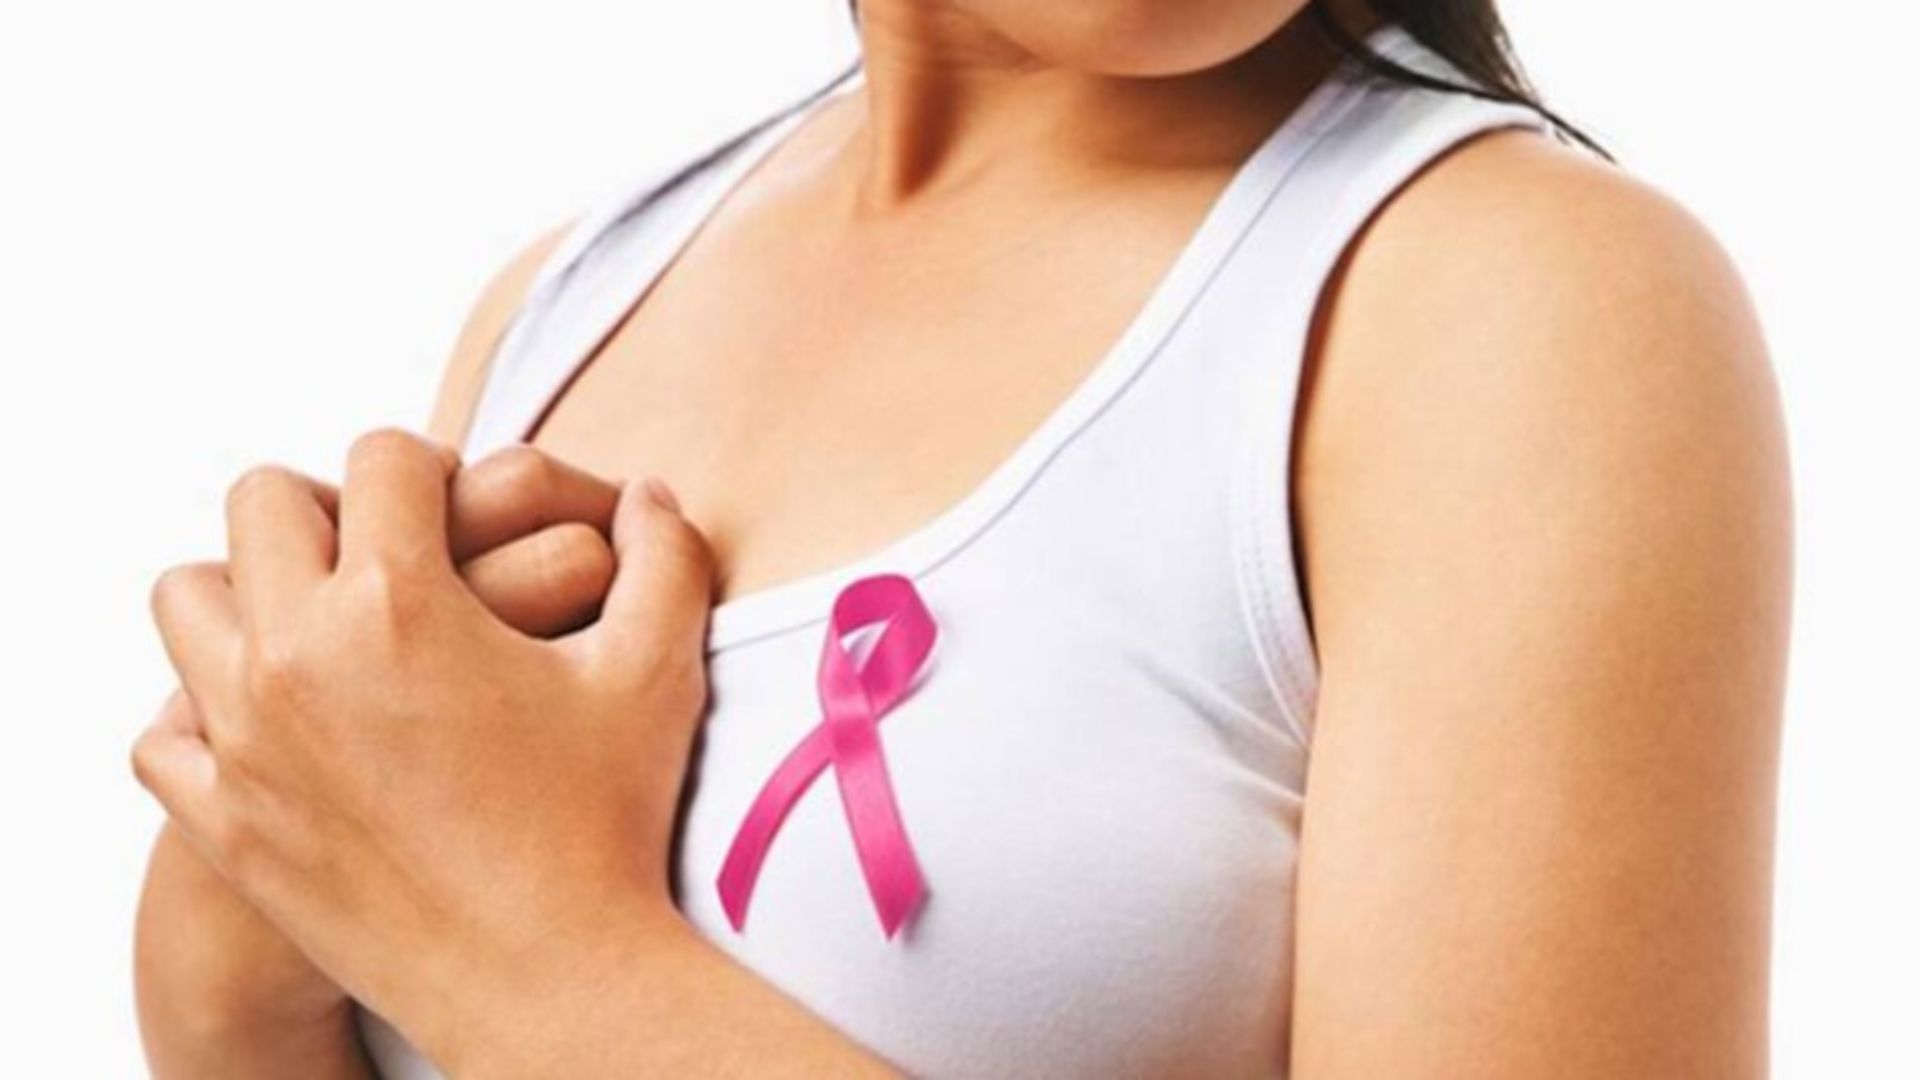 'स्तन कैंसर से 2040 तक प्रतिवर्ष 10 लाख लोगों की मौत होने की आशंका', एक रिपोर्ट में सामने आई बात